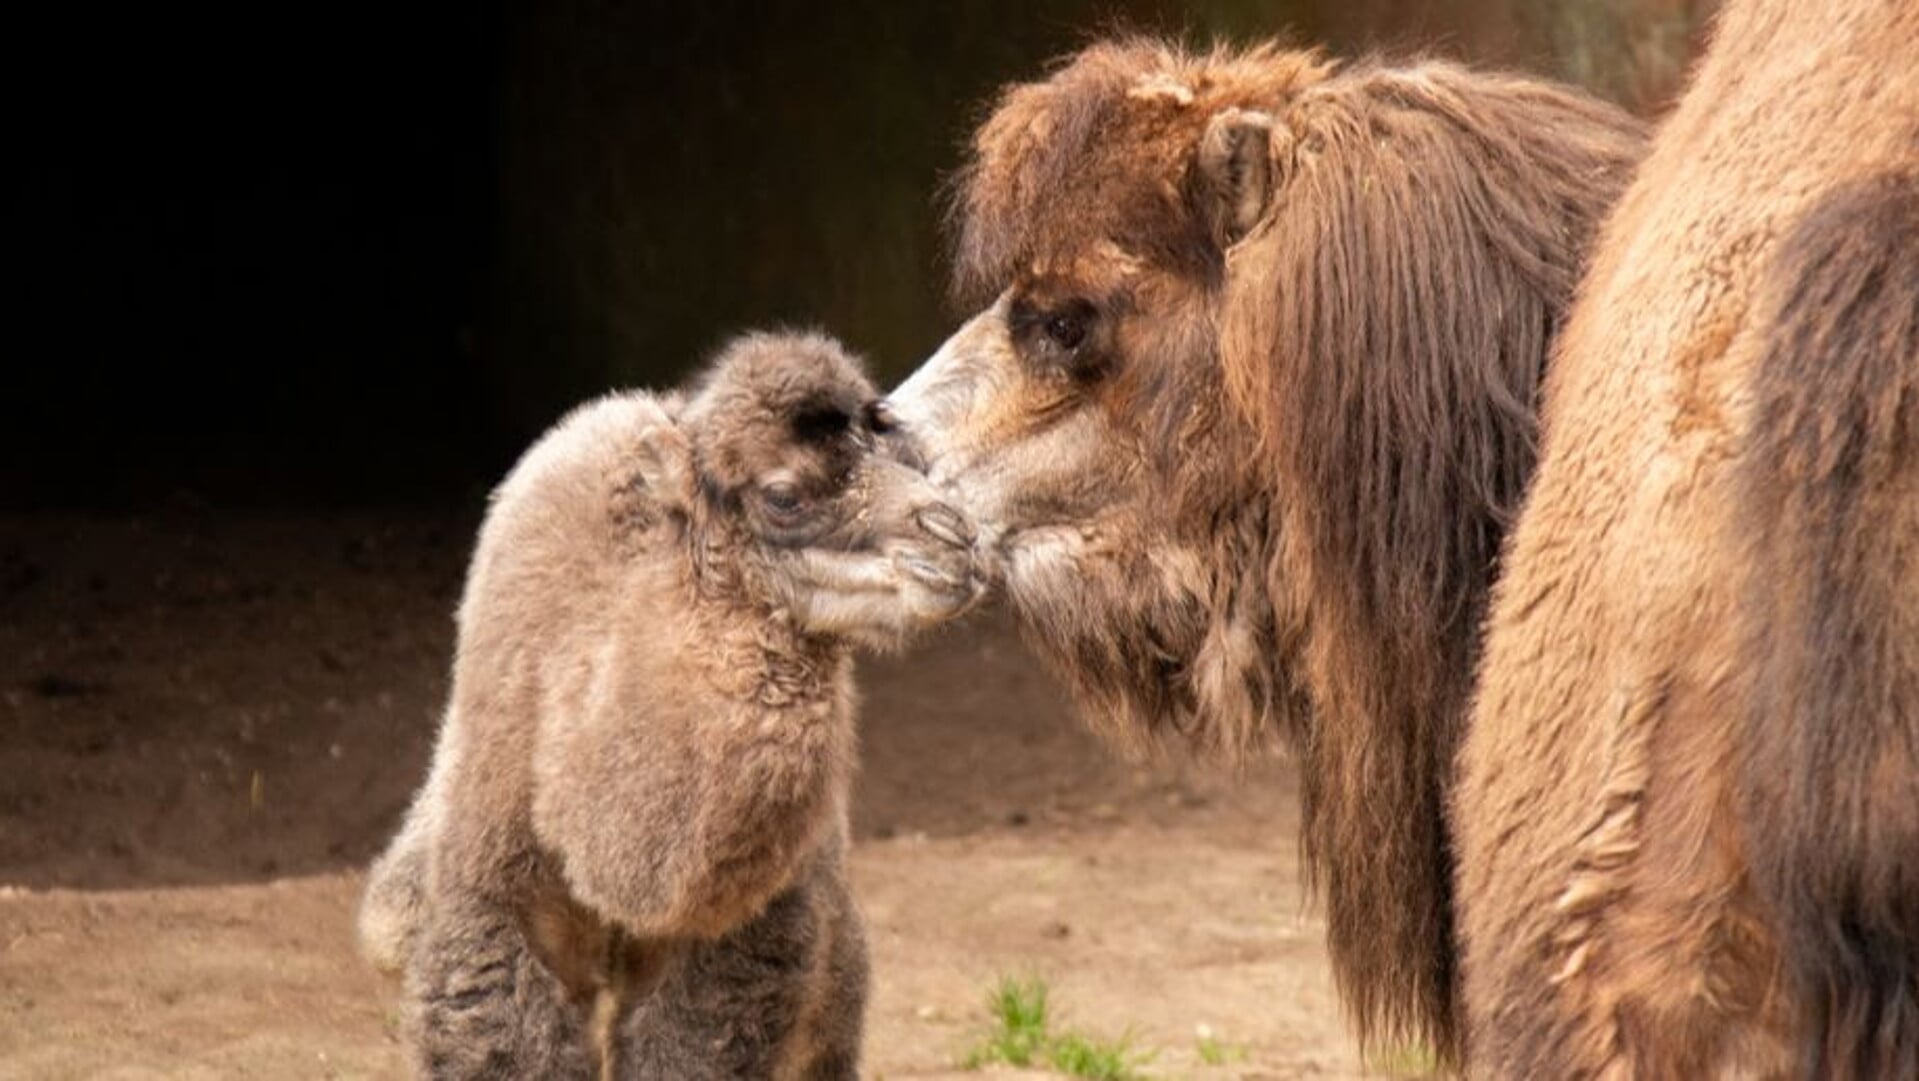 de baby kameel naast moeder kameel Rosa.